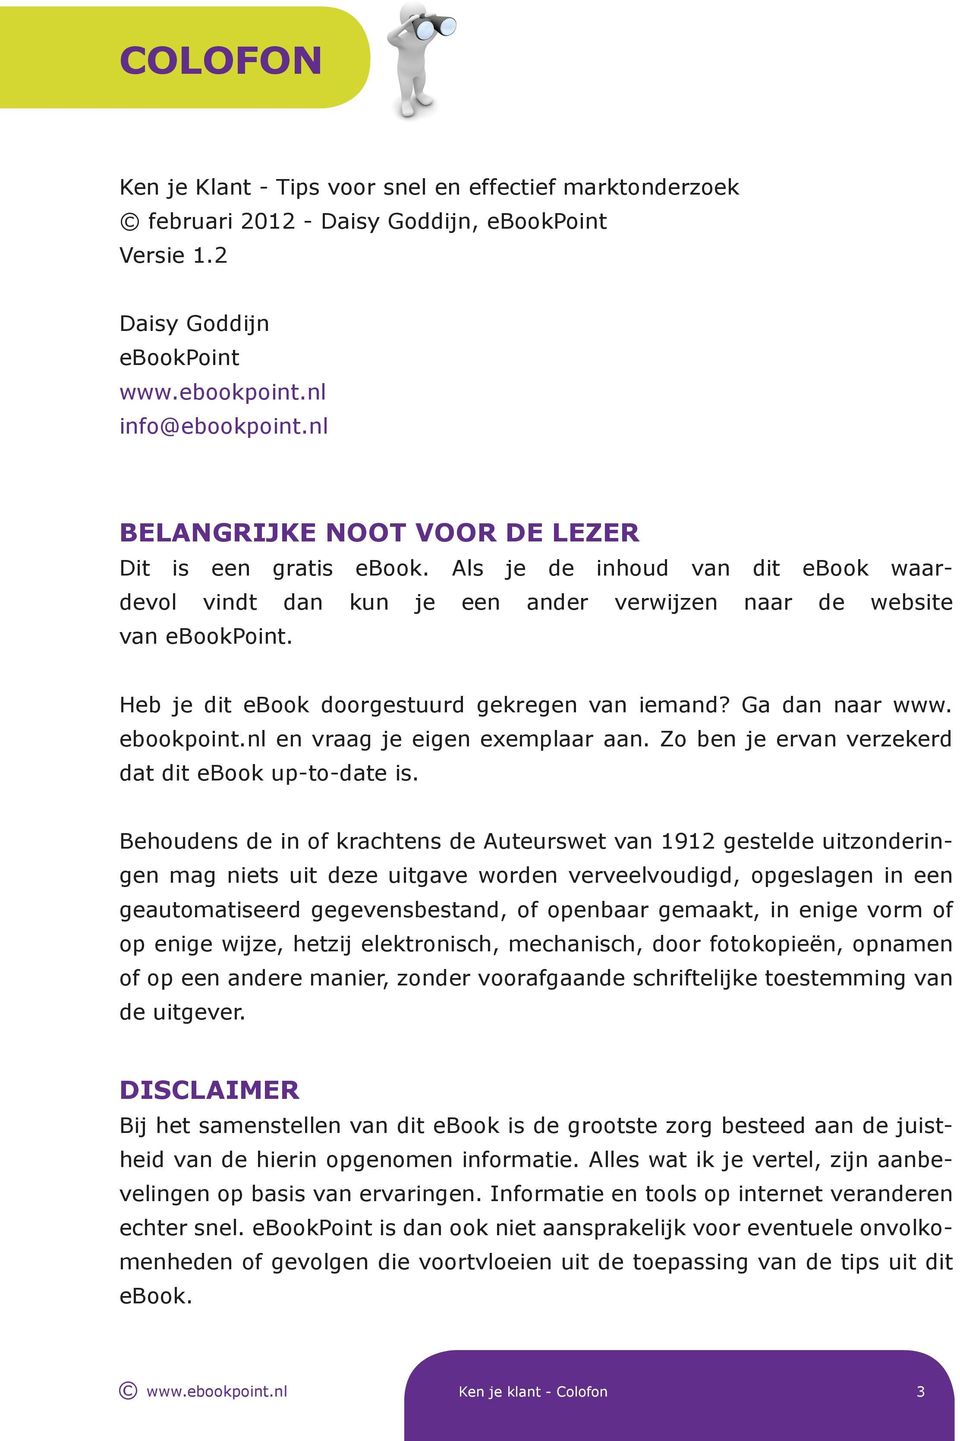 Heb je dit ebook doorgestuurd gekregen van iemand? Ga dan naar www. ebookpoint.nl en vraag je eigen exemplaar aan. Zo ben je ervan verzekerd dat dit ebook up-to-date is.